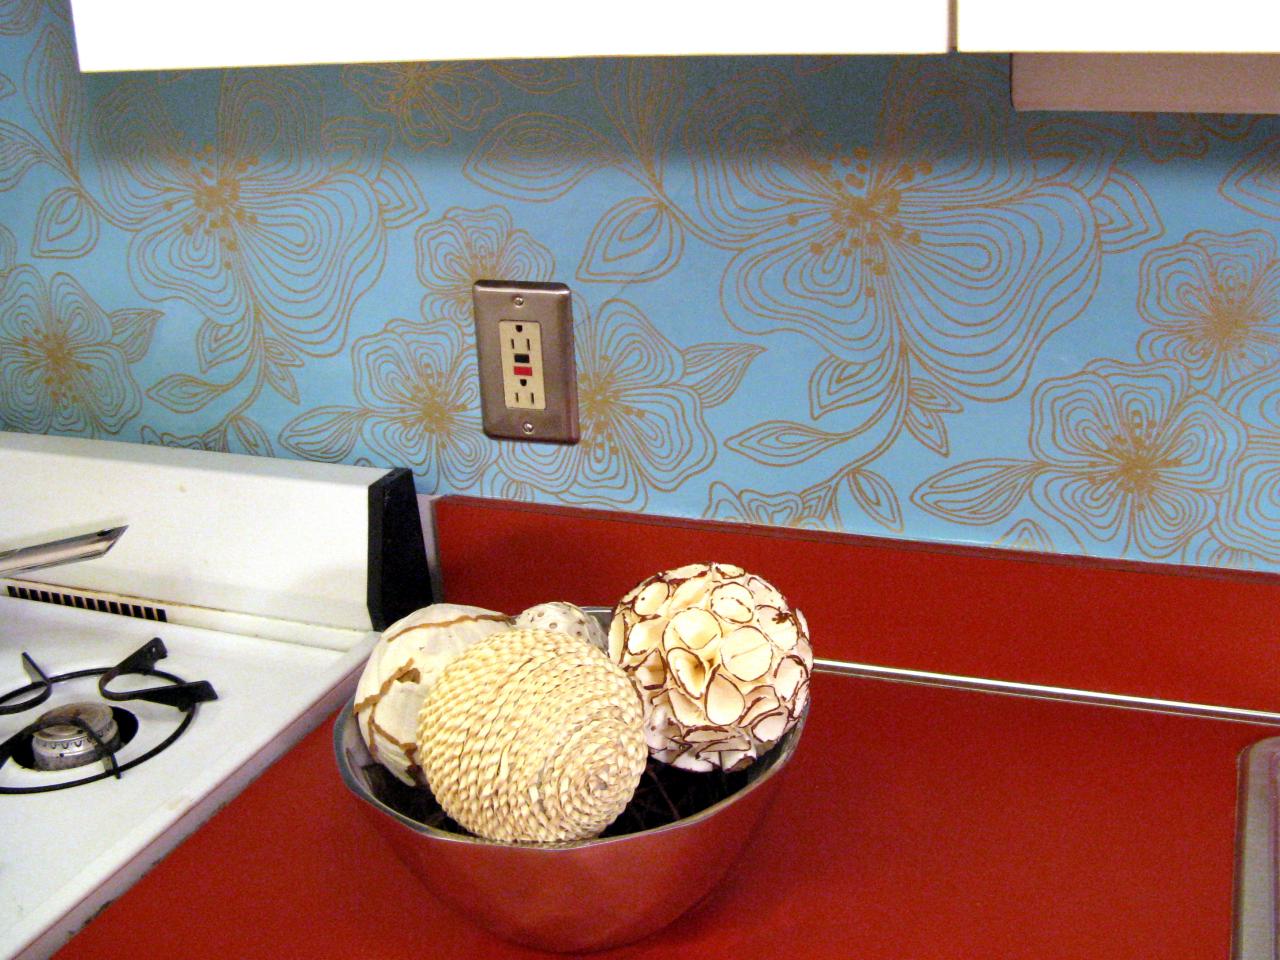 100 Half Day Designs Wallpapered Backsplash Kitchen Ideas Design 1280x960